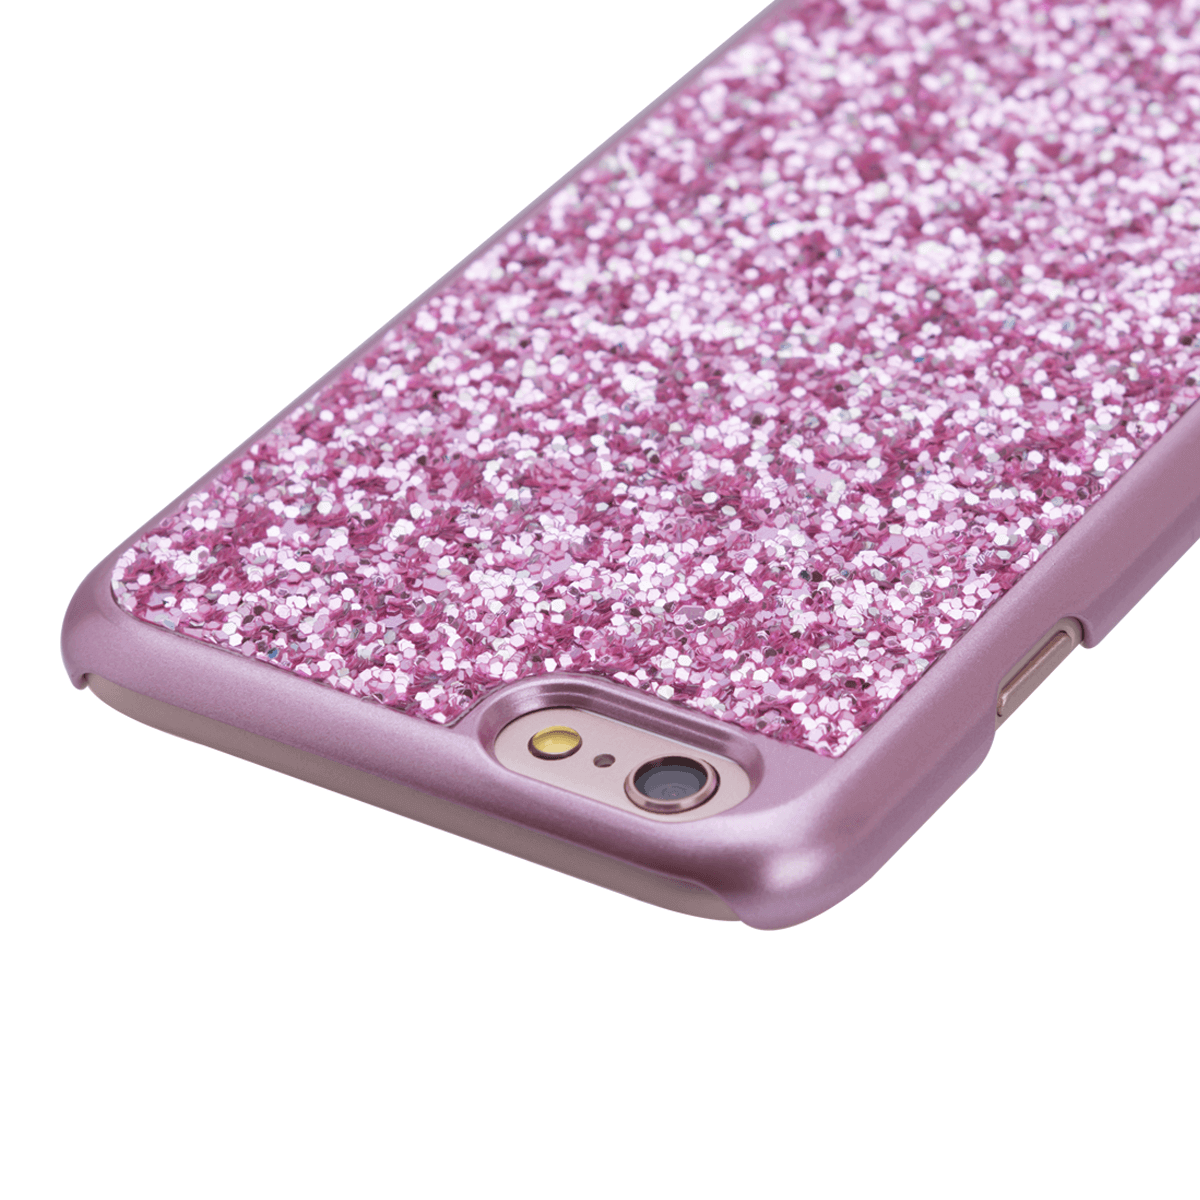 iPhone 6/6S Plus için spada Glitter Rose Gold renk Kapak